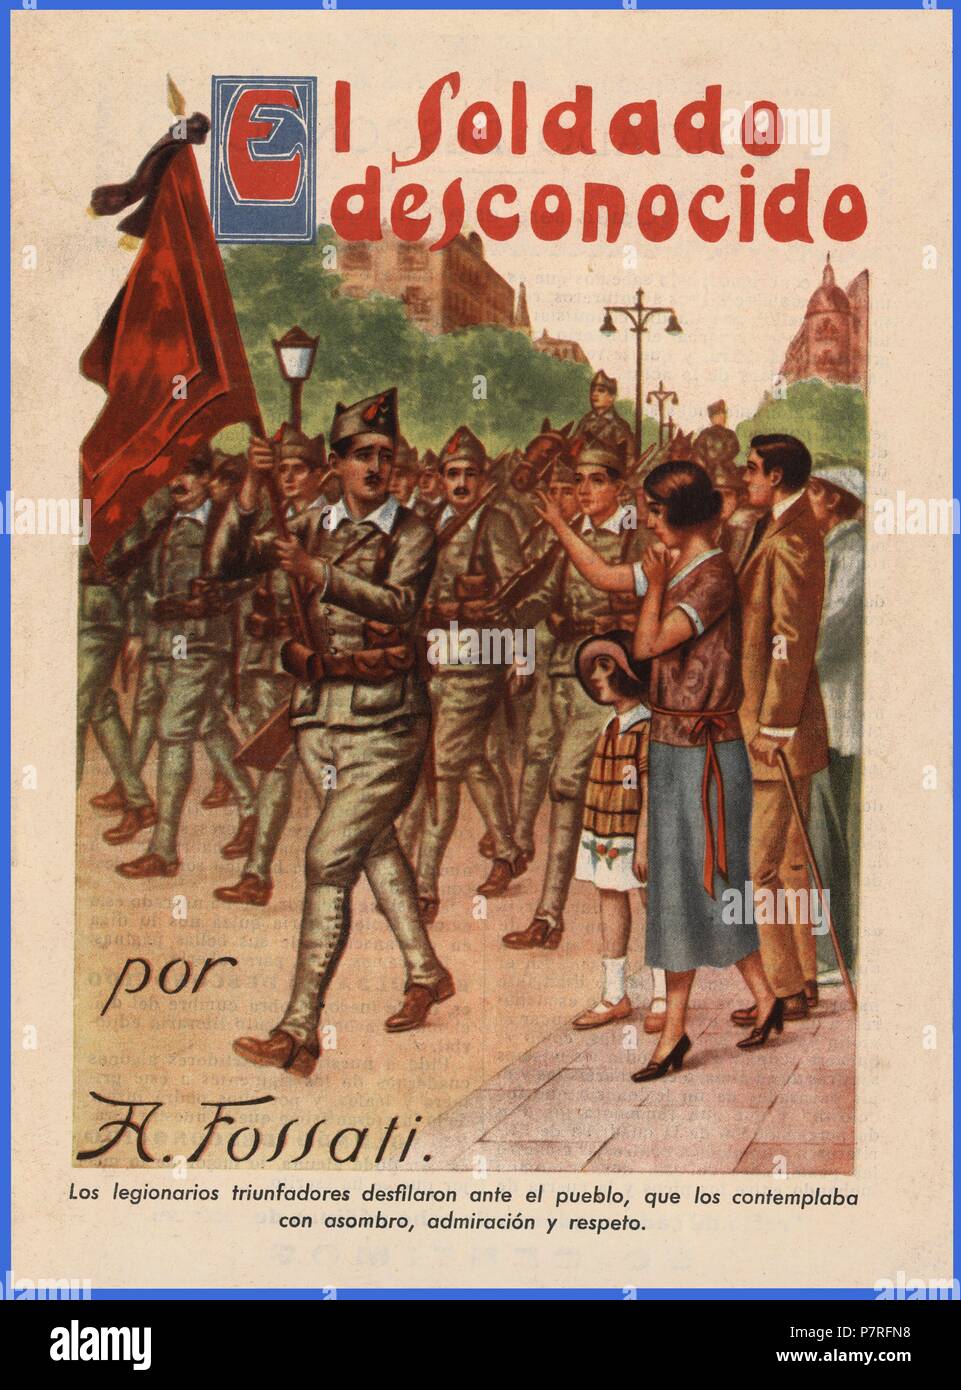 Novela juvenil por entregas. El soldado desconocido, por A. Fossati. Madrid, años 1925. Stock Photo